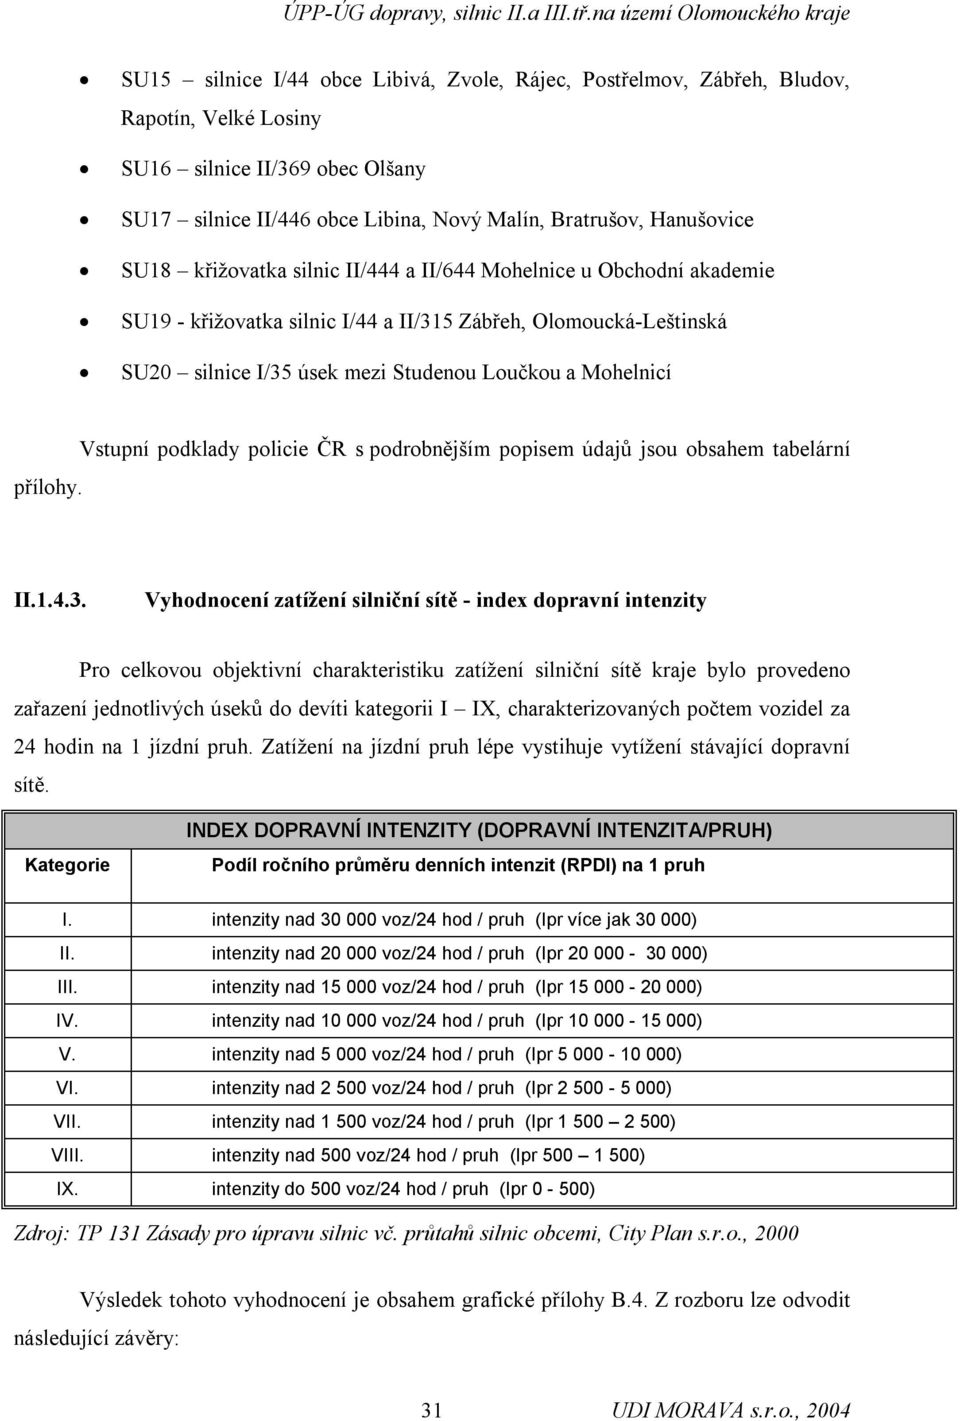 Vstupní podklady policie ČR s podrobnějším popisem údajů jsou obsahem tabelární II.1.4.3.